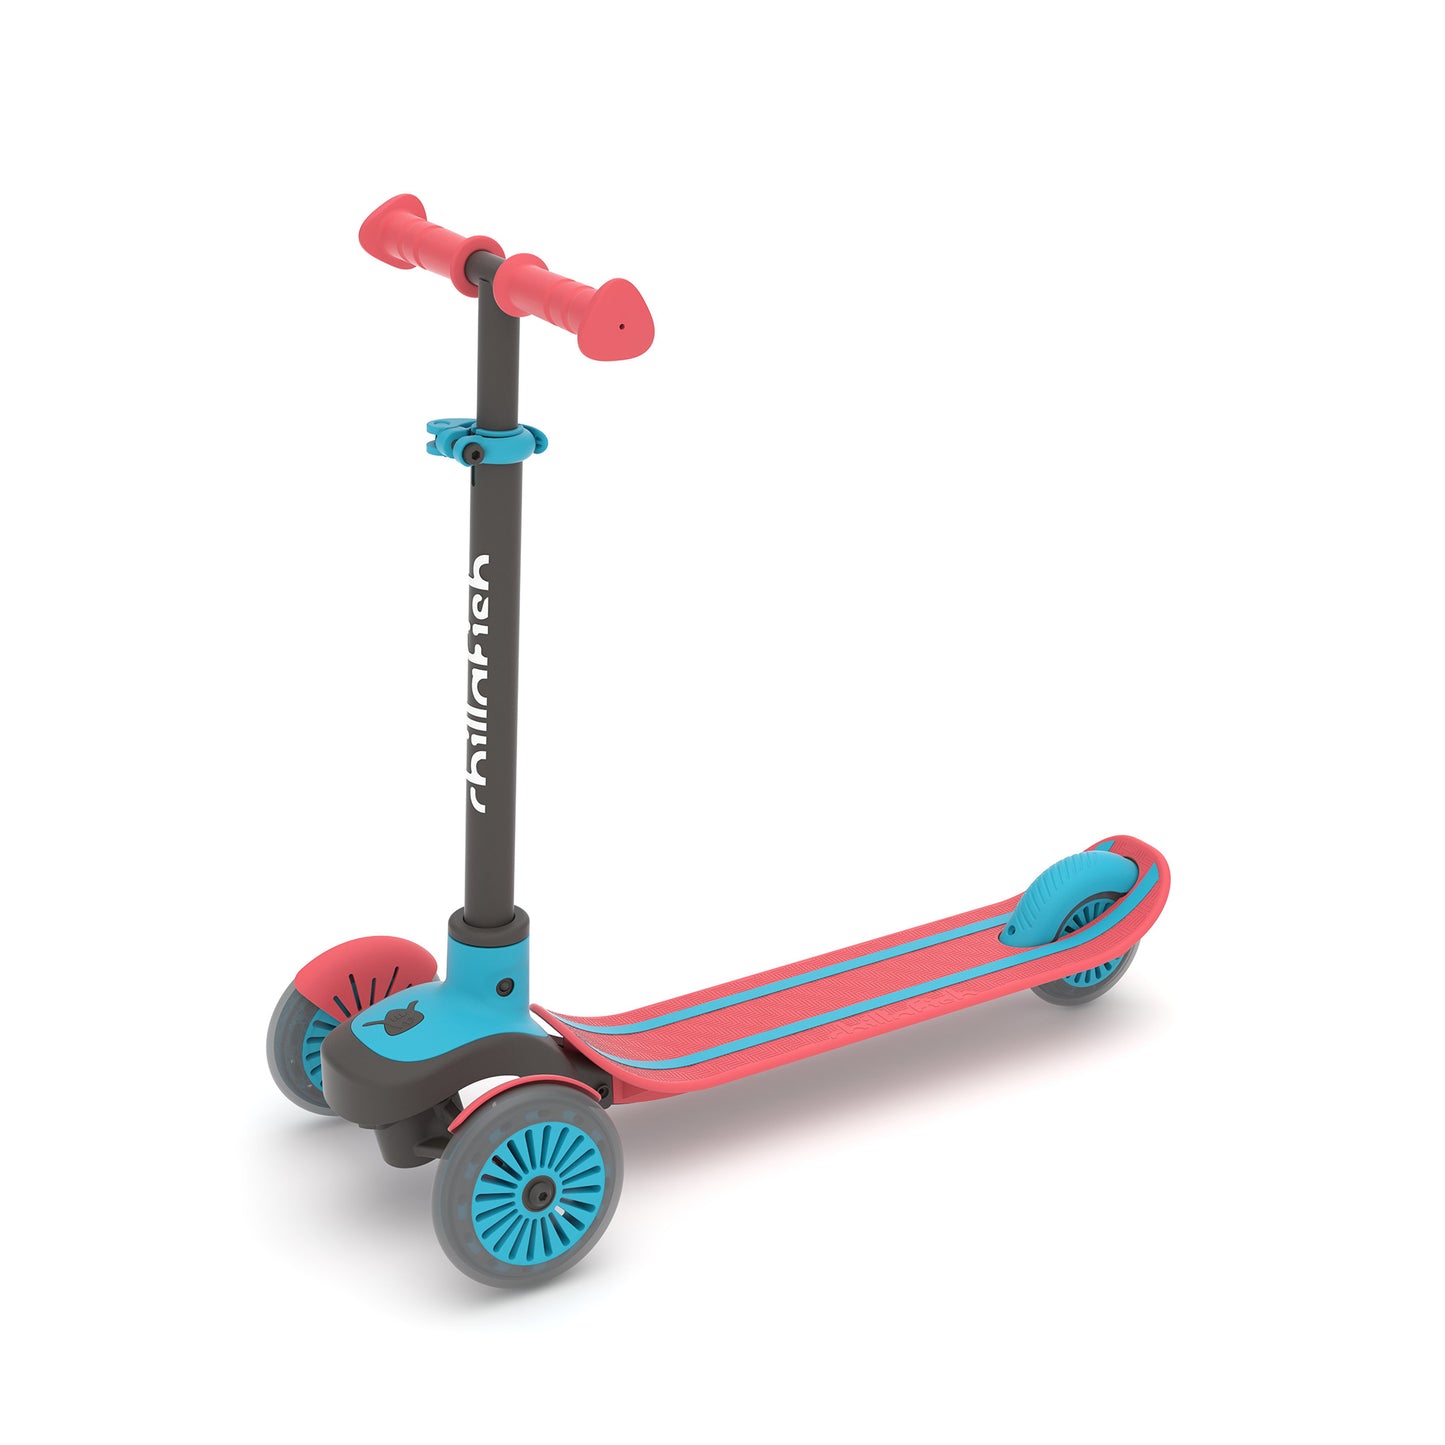 Scotti 3-wieler leun-om-te-sturen step met antislip deck en geïntegreerde rem, verstelbaar in hoogte voor alle leeftijden vanaf 3 jaar.